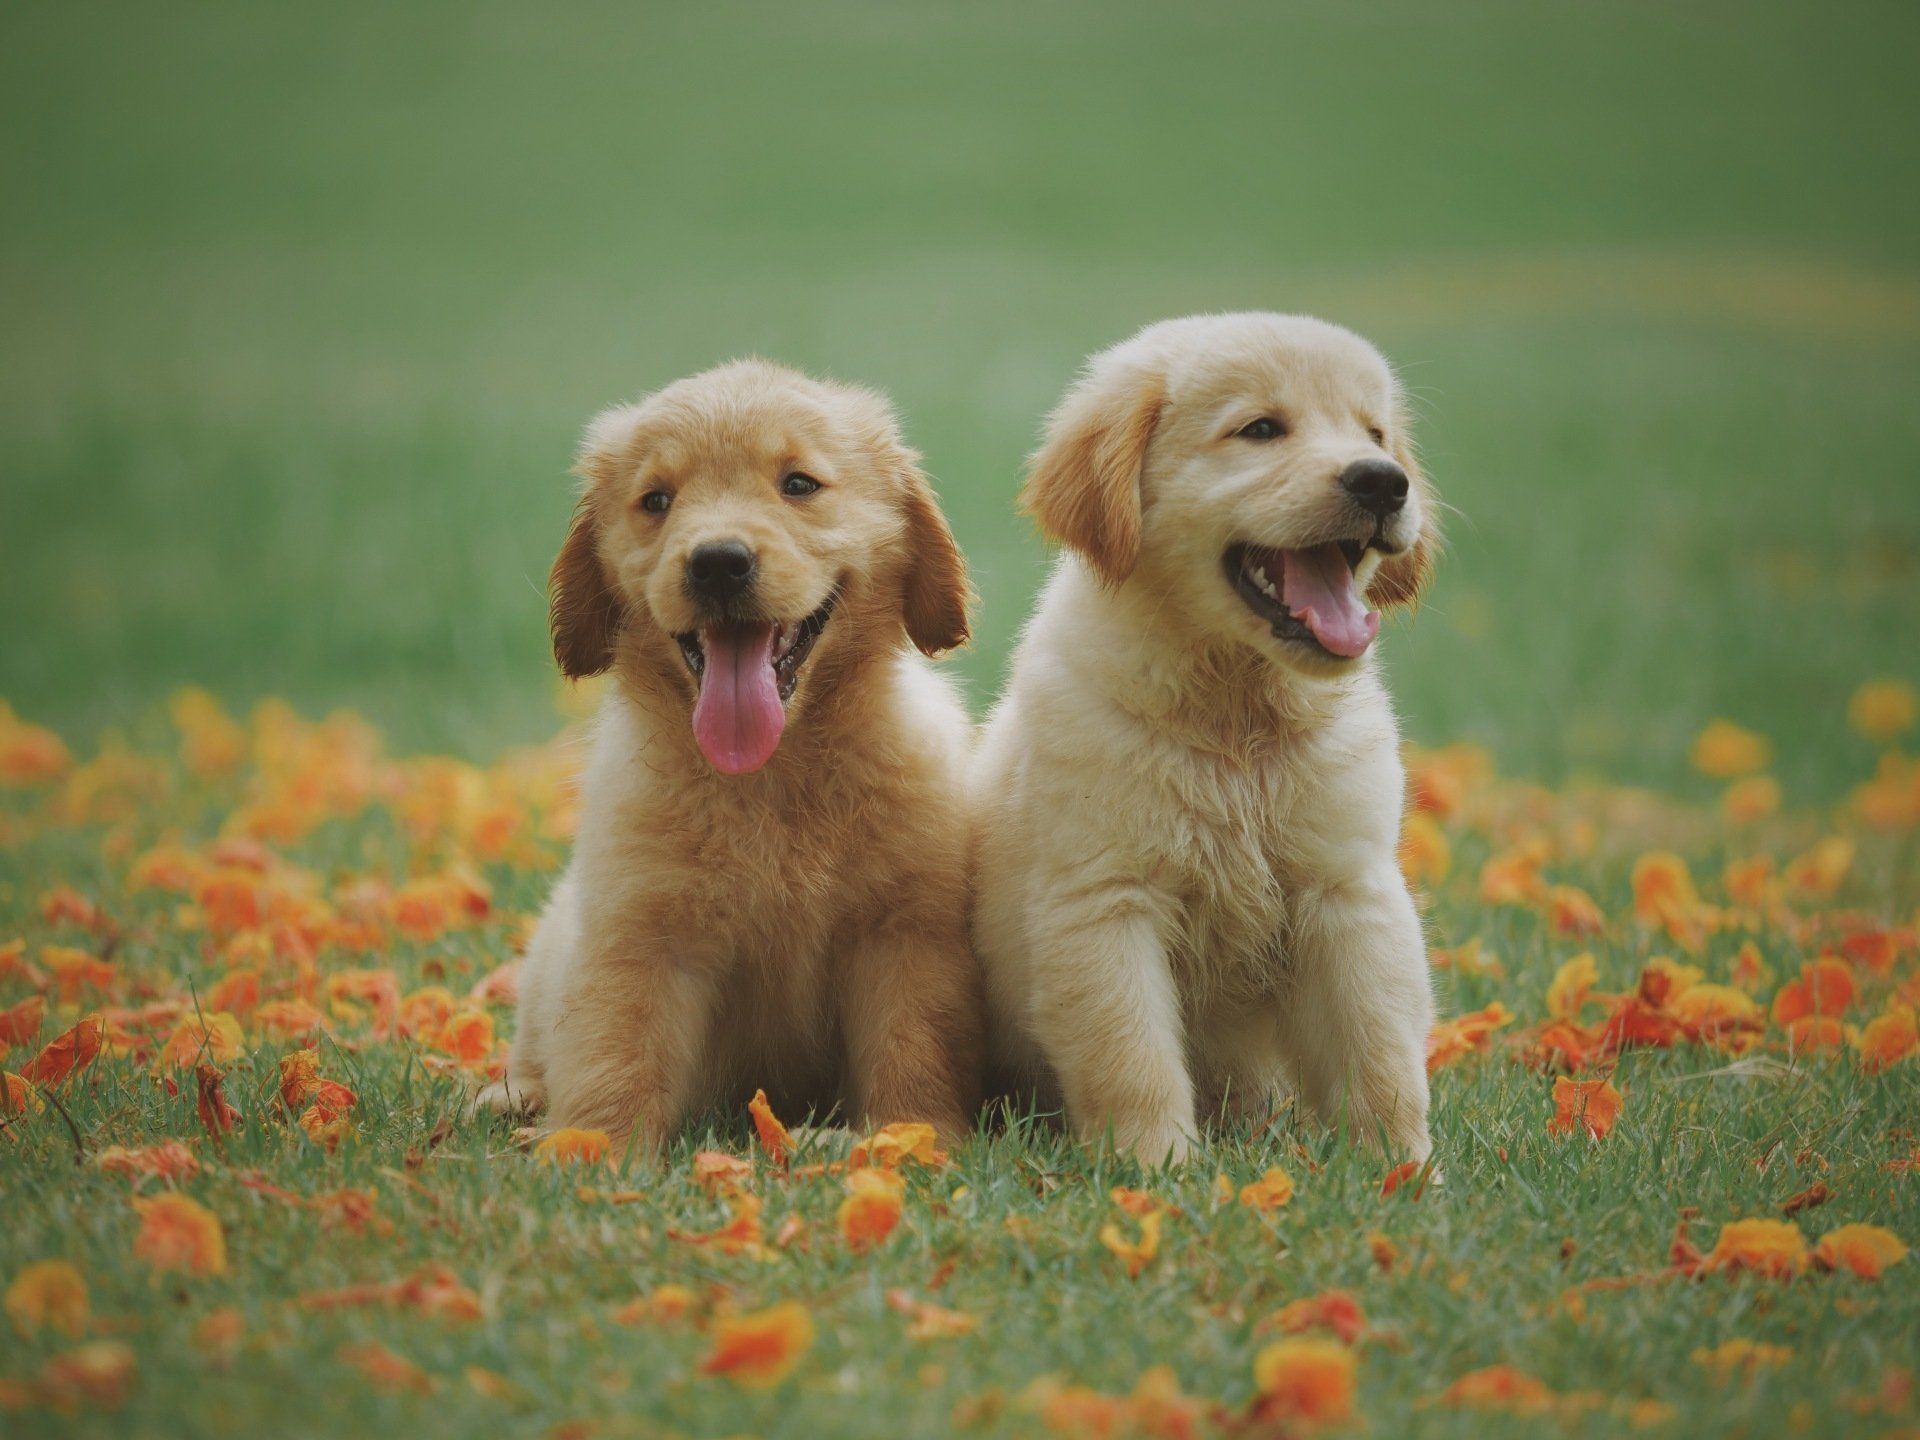 happy puppy in grass